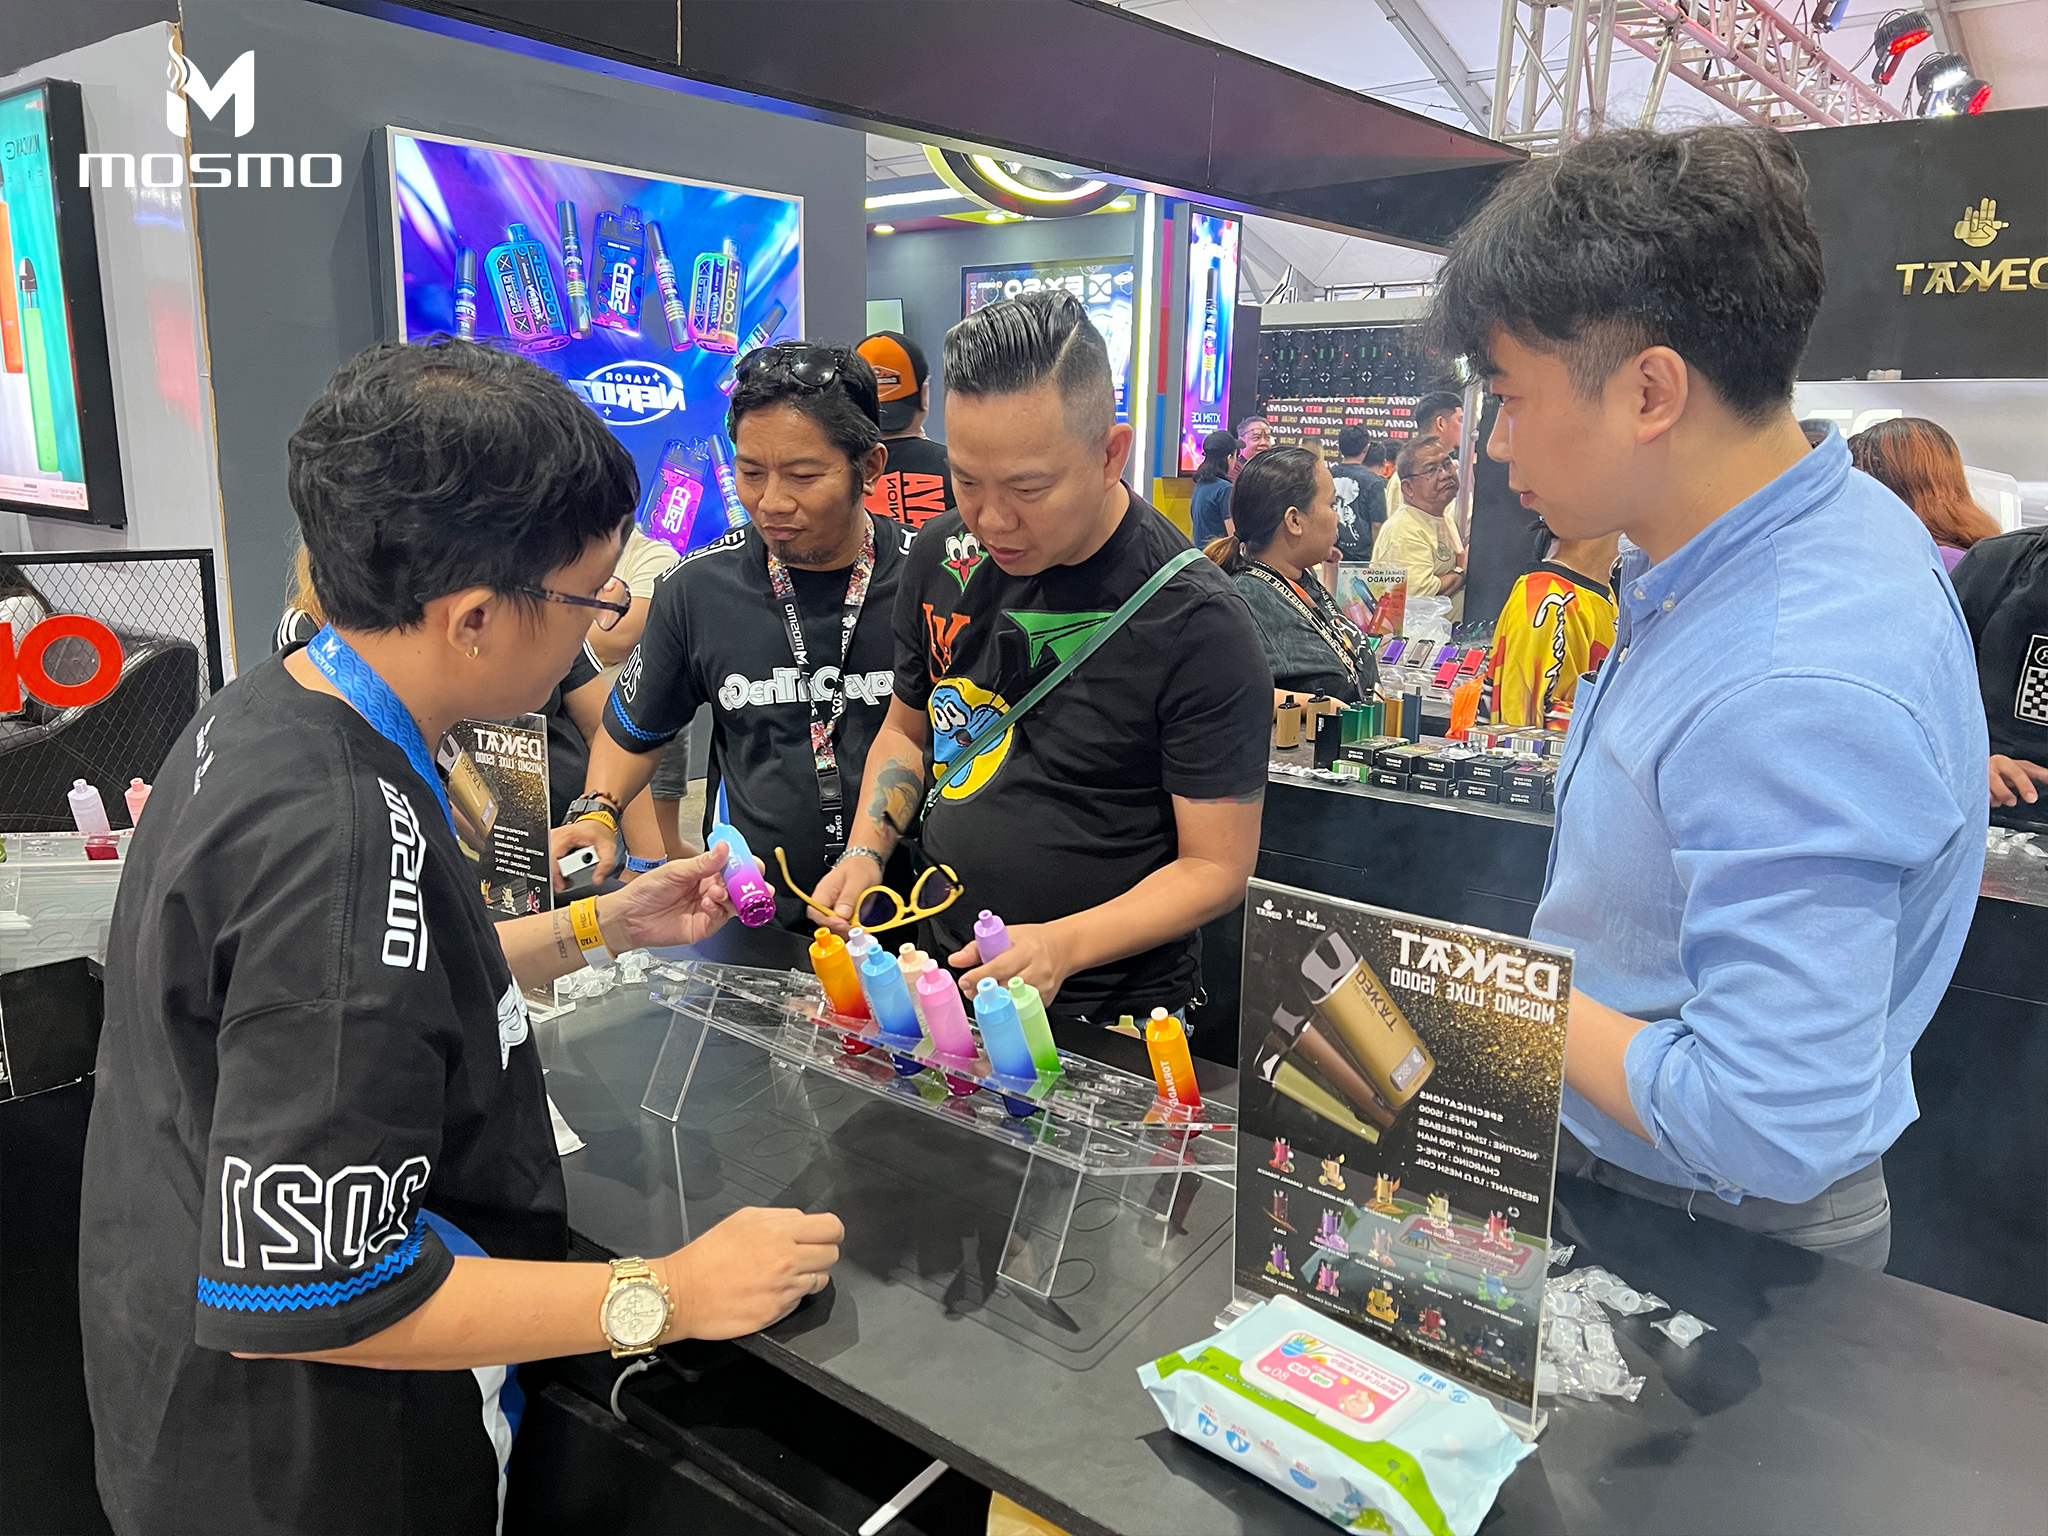 Filipijnen Vape Expo: MOSMO's nieuwe productendebuut trekt veel aandacht